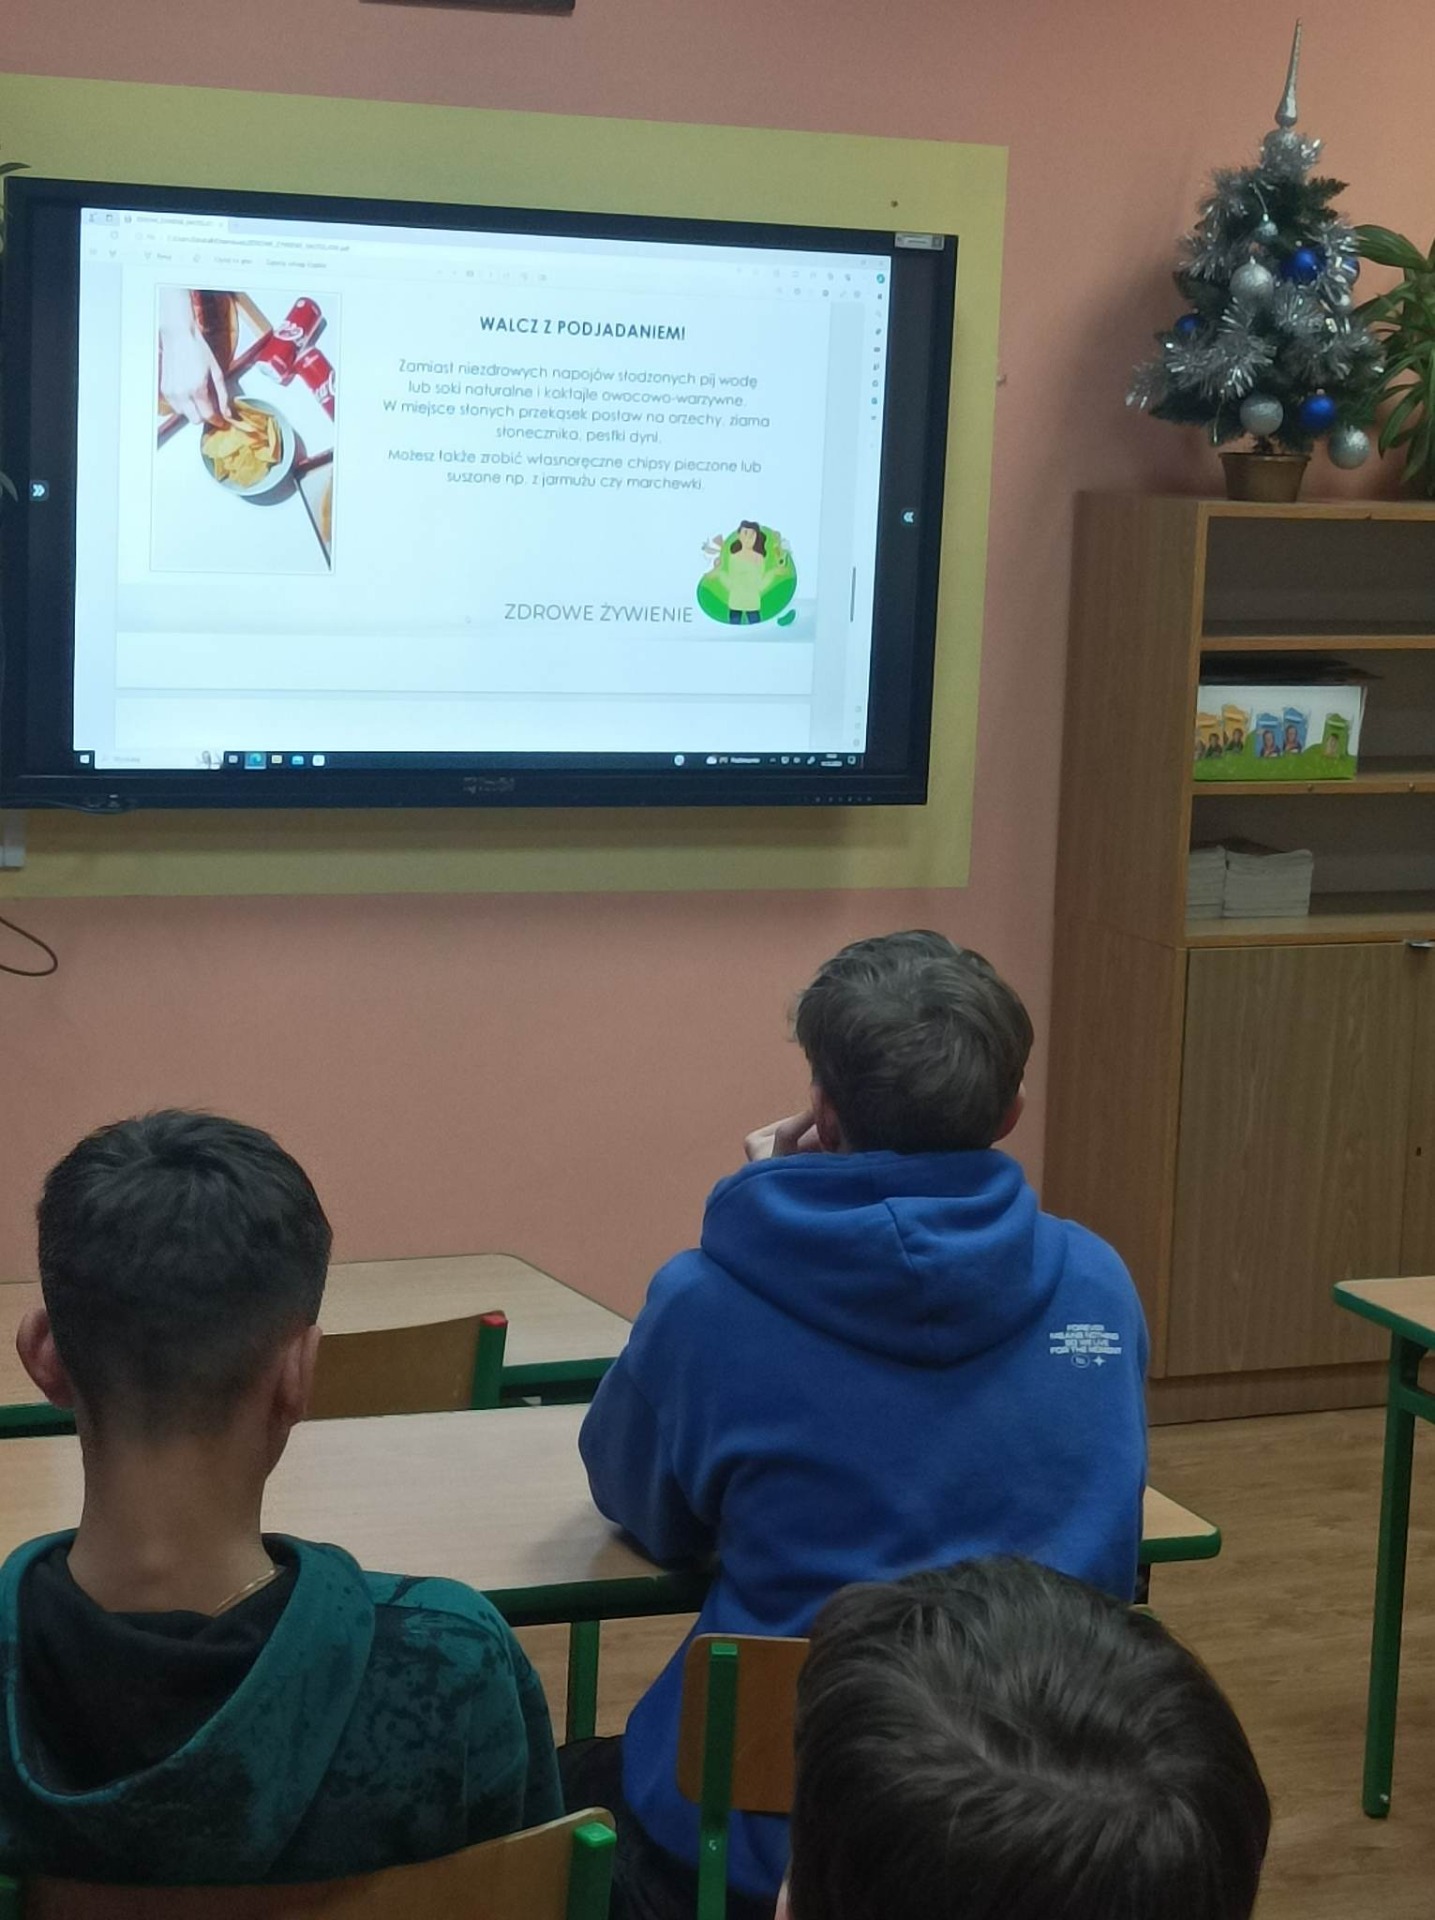 Uczniowie oglądają na lekcji prezentację o zdrowym żywieniu wyświetlaną na monitorze interaktywnym.